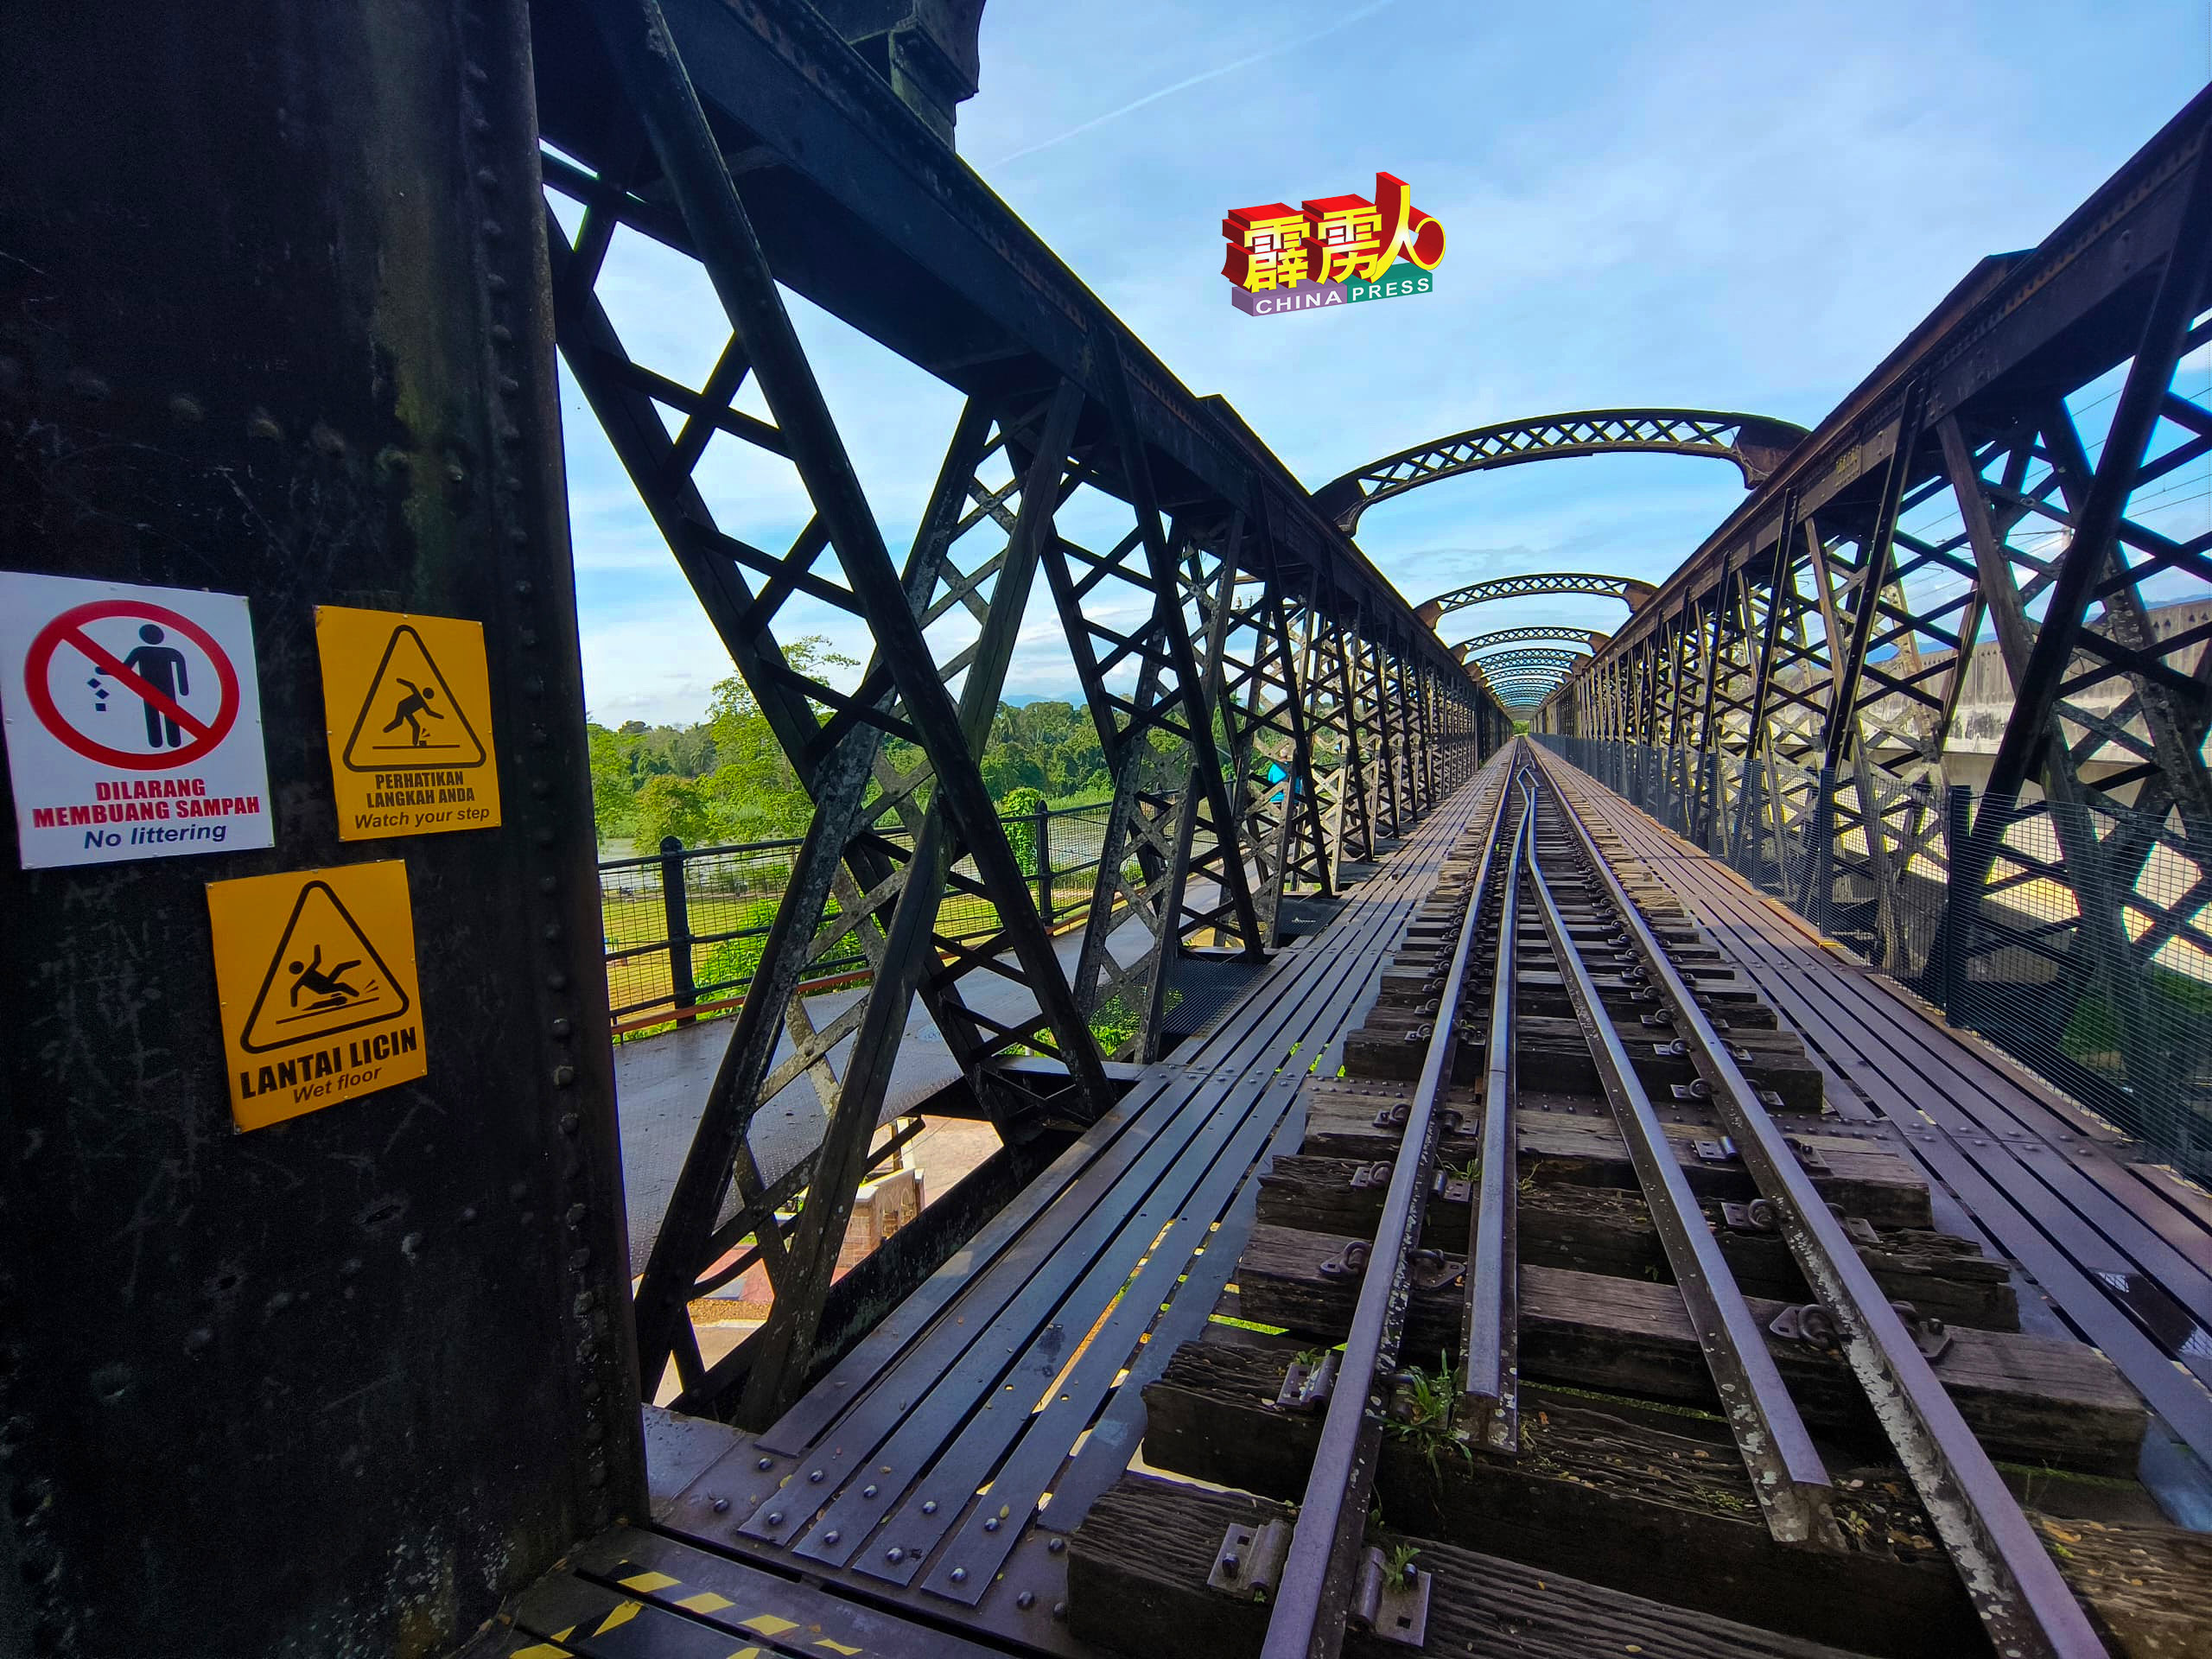 维多利亚火车桥处贴上许多告示牌醒游客，桥面铁板湿滑、小心步行、勿随地丢垃圾。